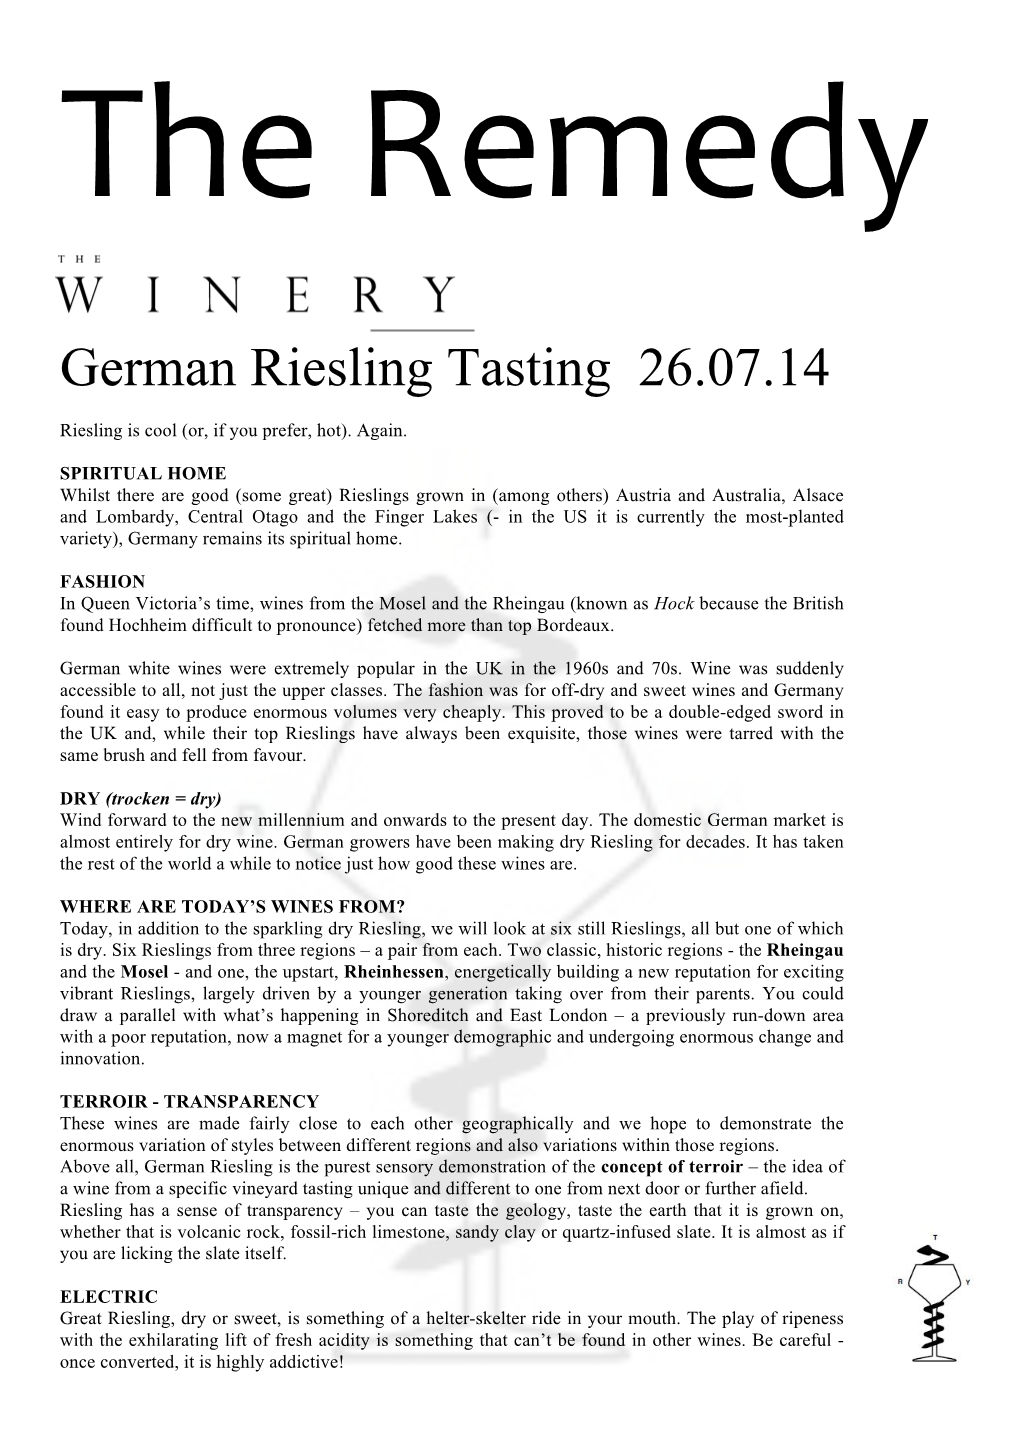 German Riesling Tasting 26.07.14